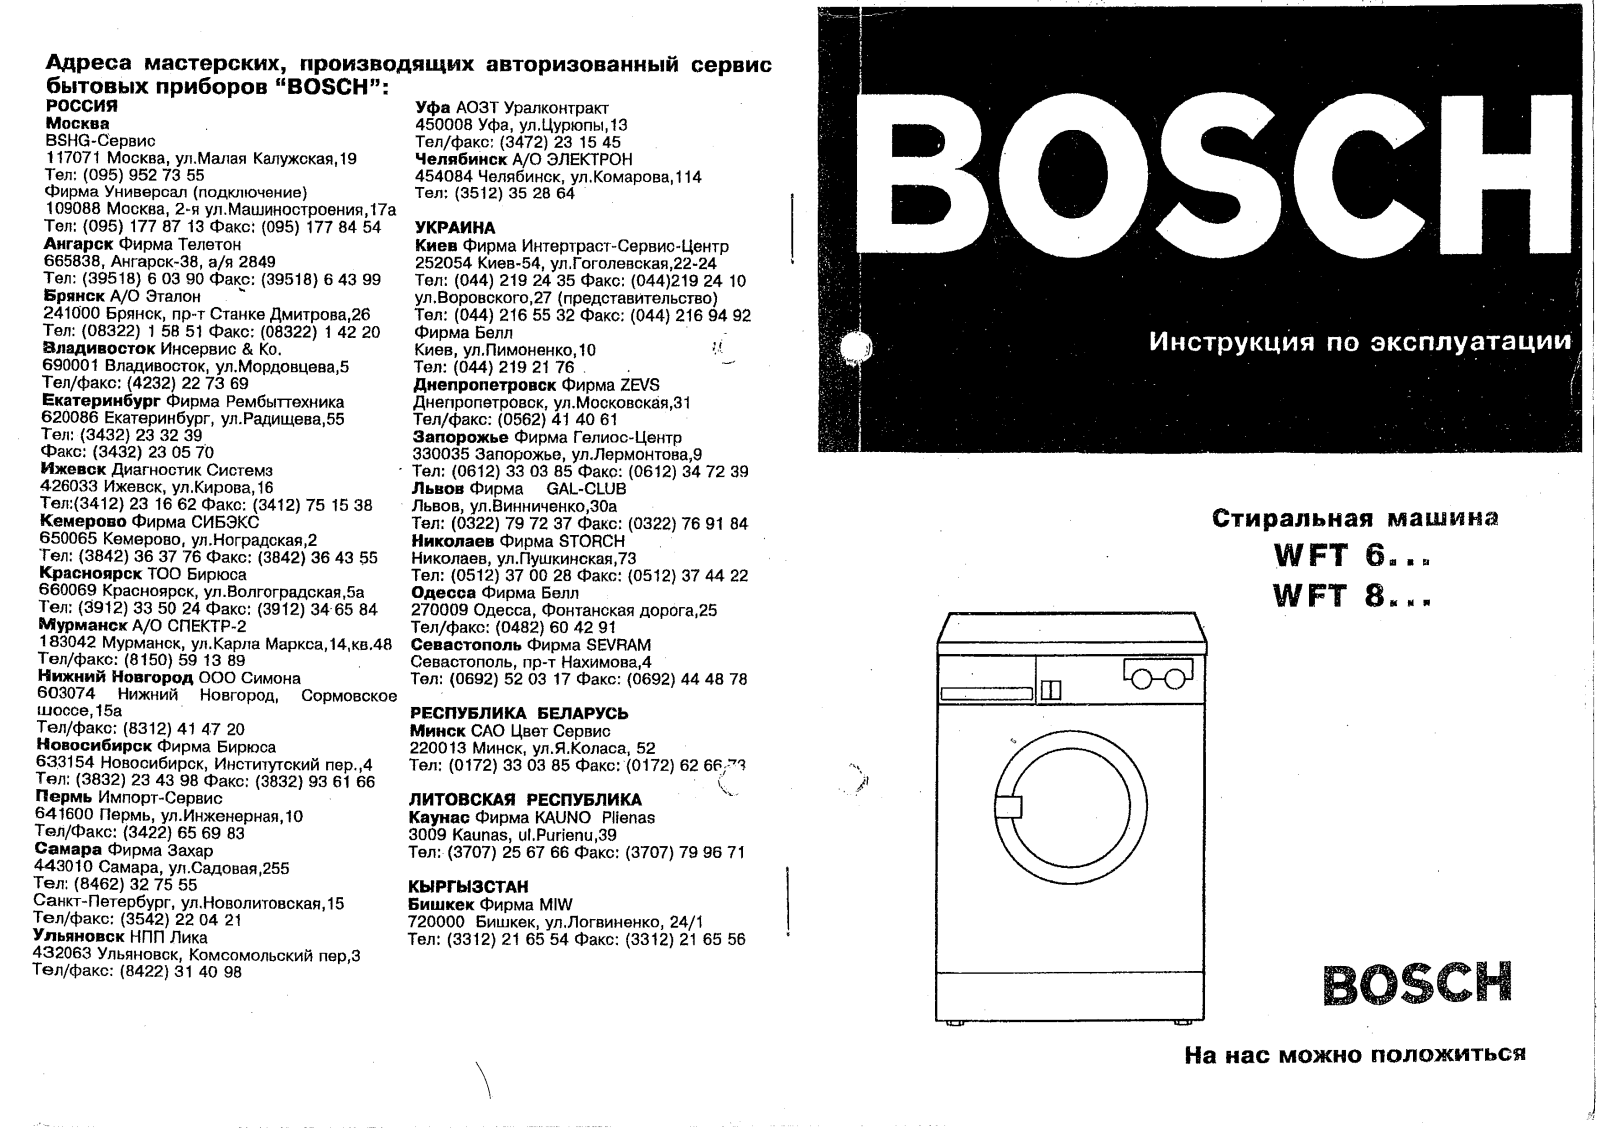 Bosch WFT 8030 User Manual